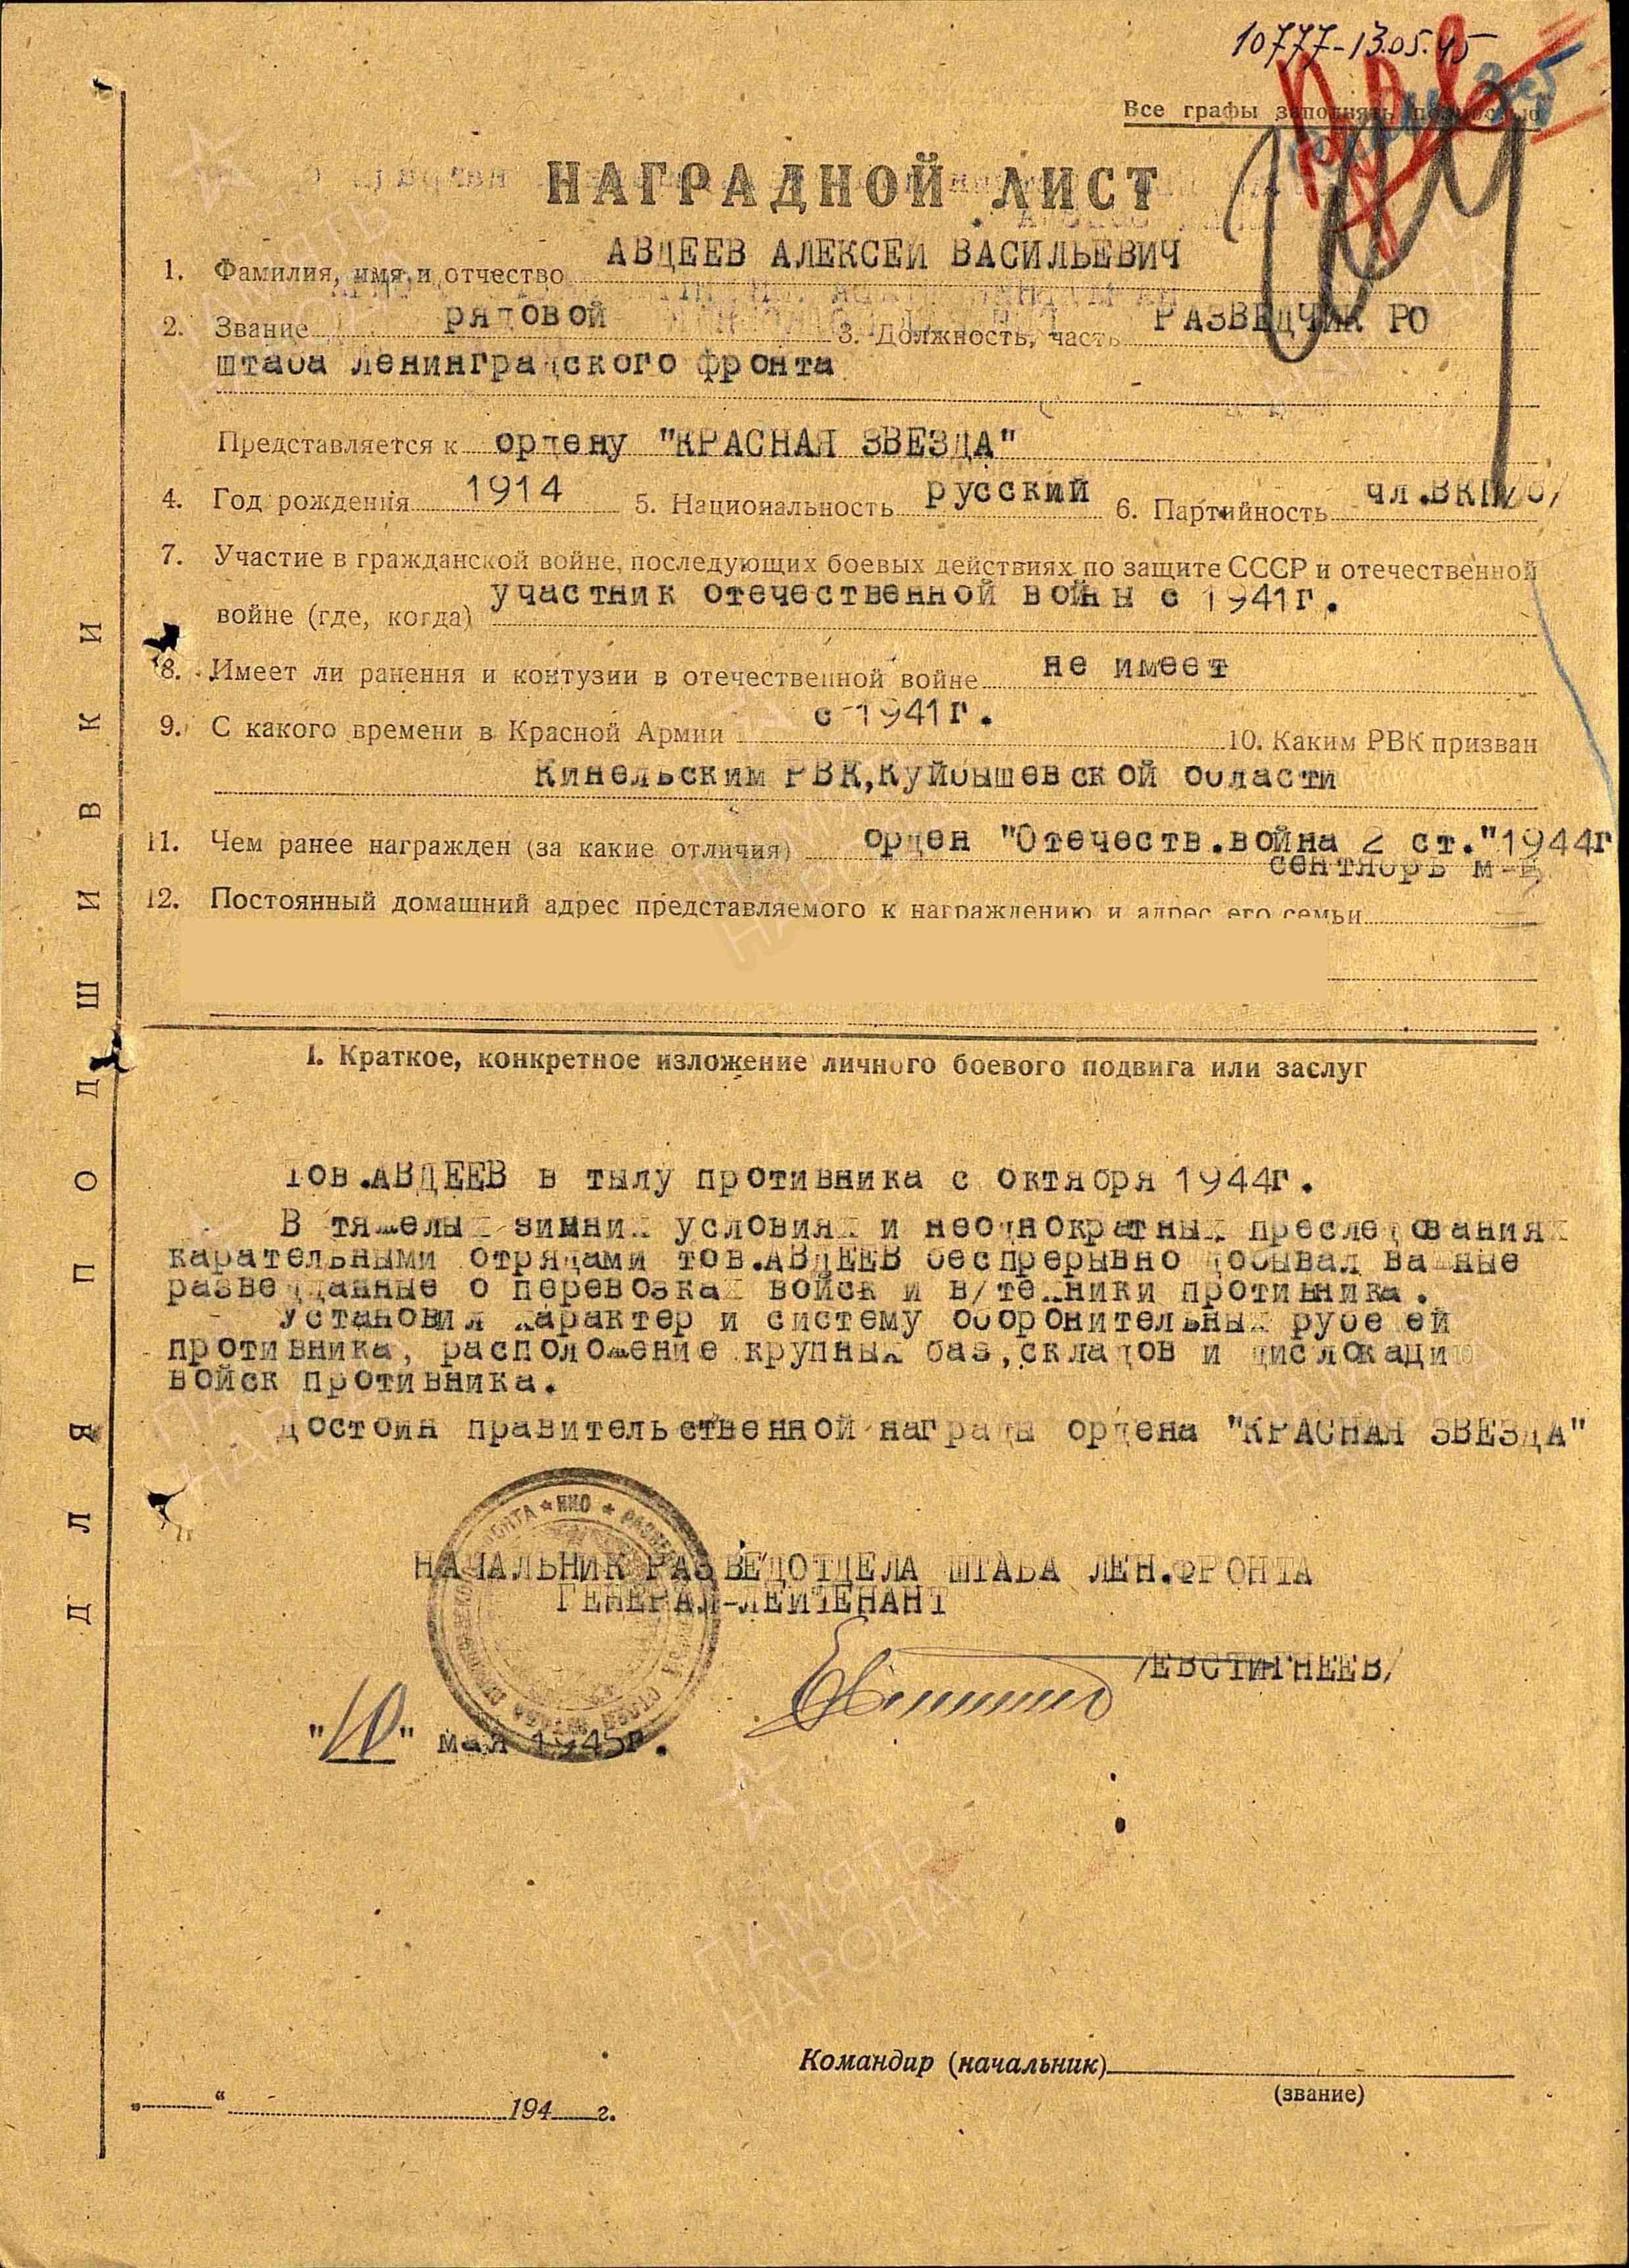 Авдеев А.В. Наградной лист от 10.05.1945 г. к ордену Красной Звезды (архивная копия) 